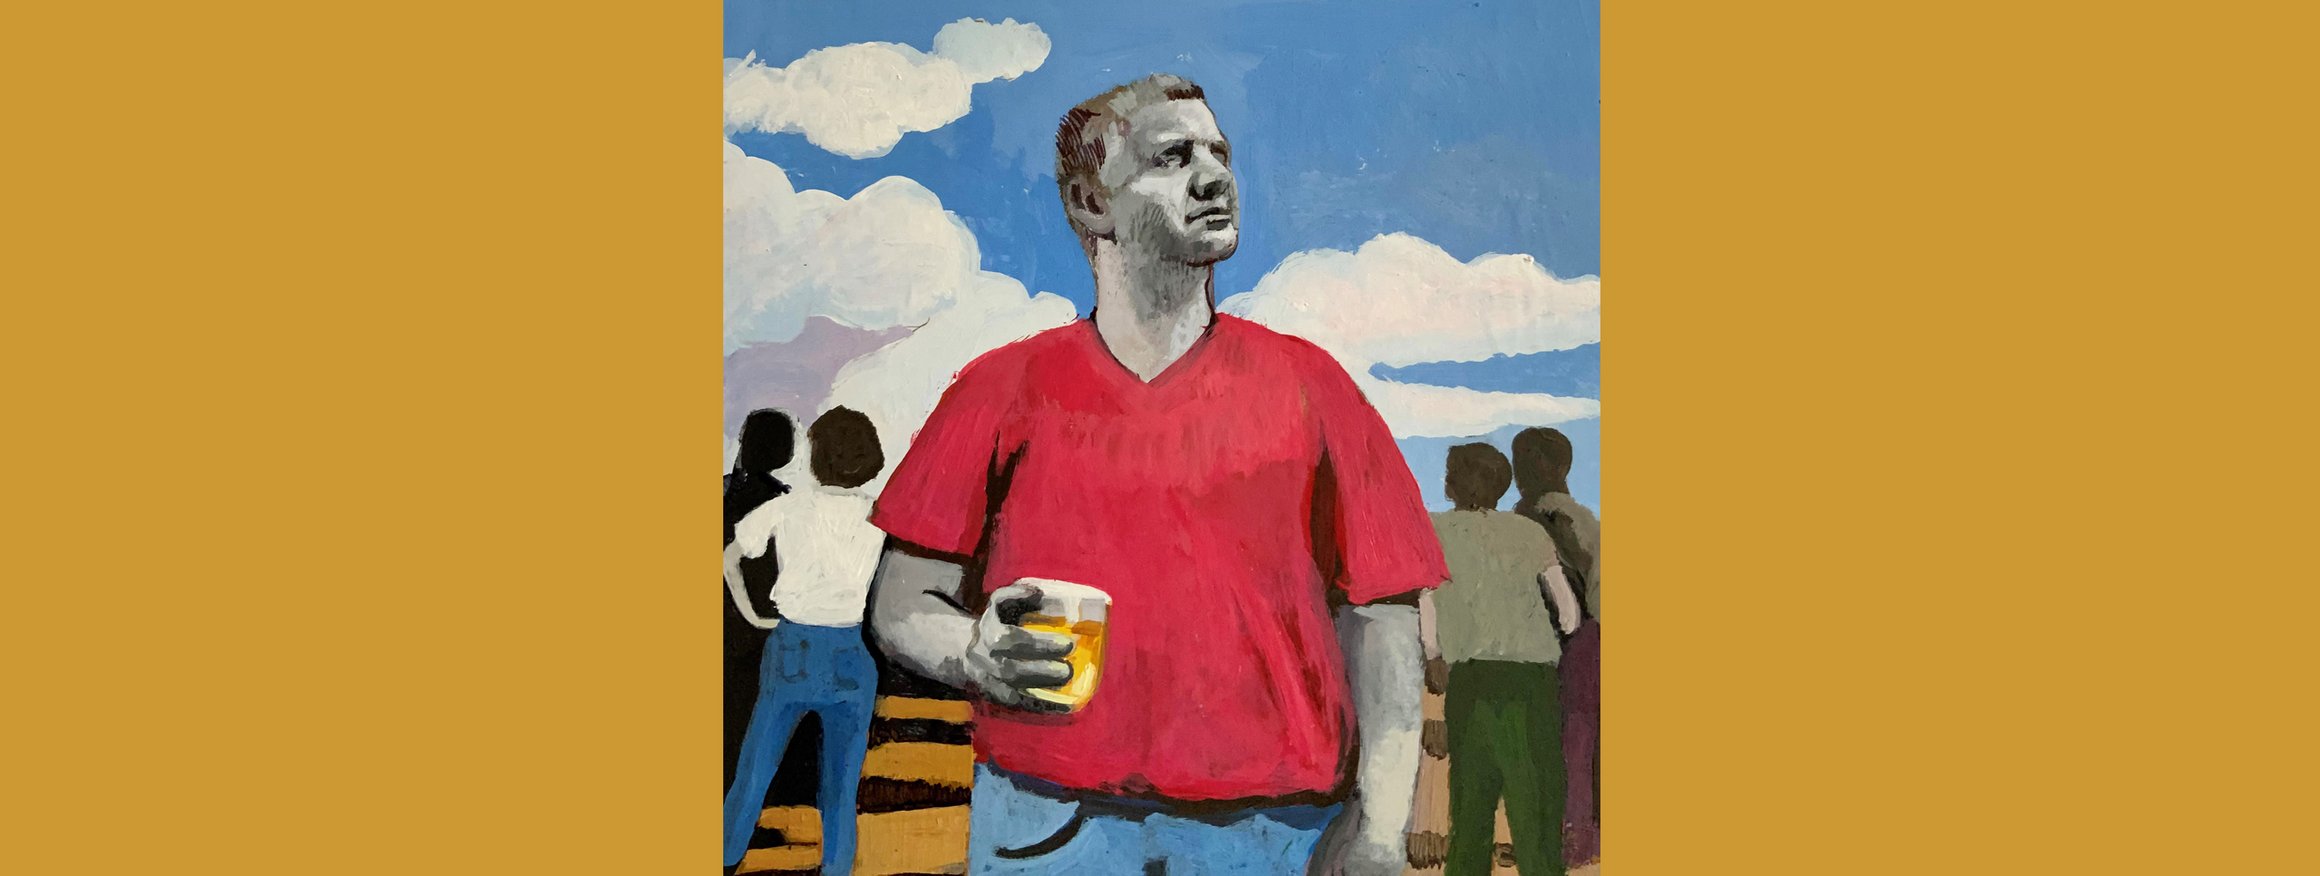 Die Illustration zeigt einen Mann in einem roten T-Shirt, hinter ihm der blaue Himmel mit ein paar weißen Wolken